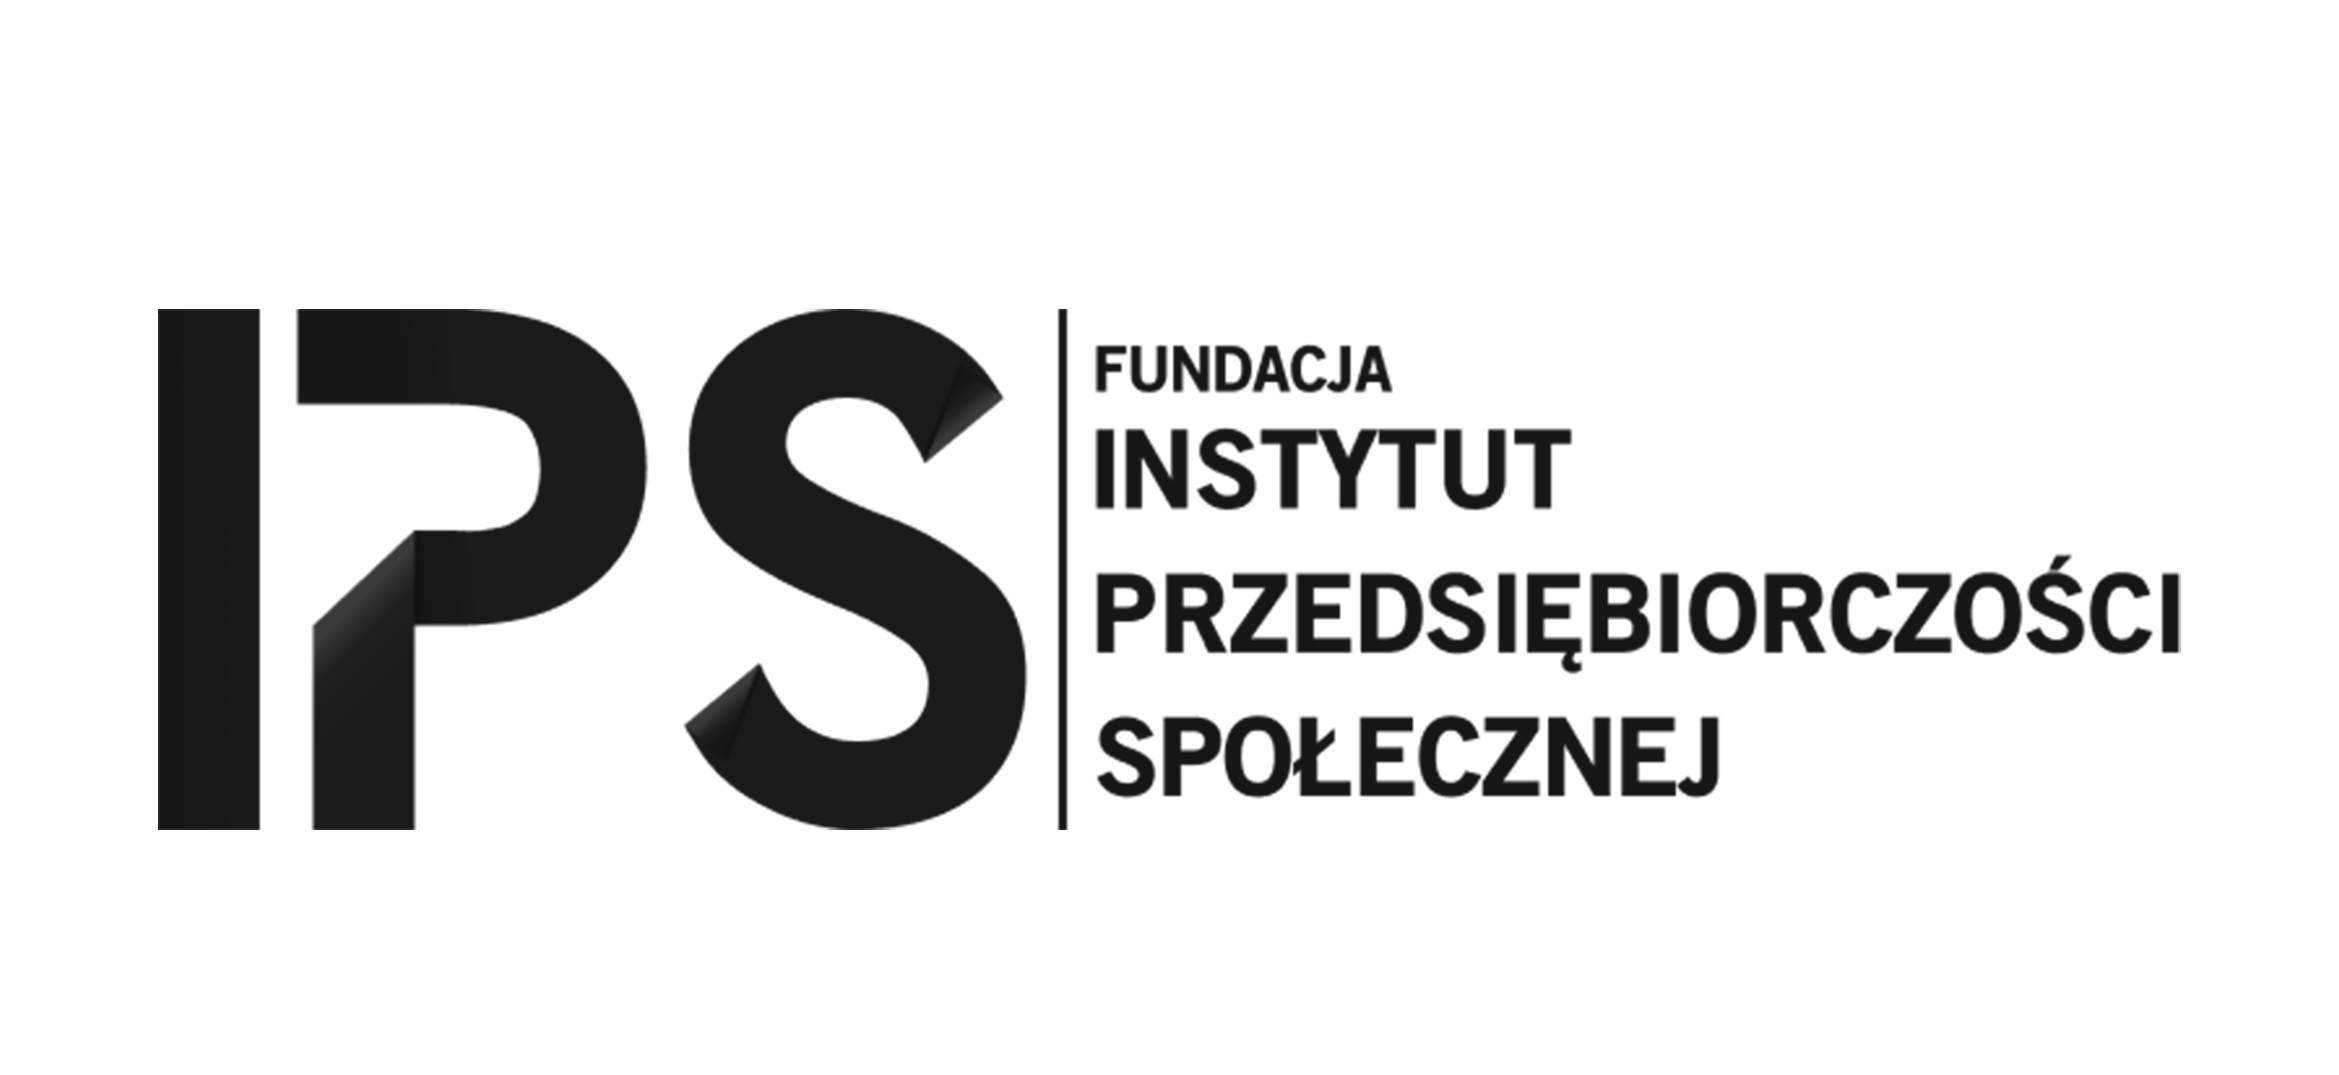 IPS Instytut Przedsiębiorczości Społecznej